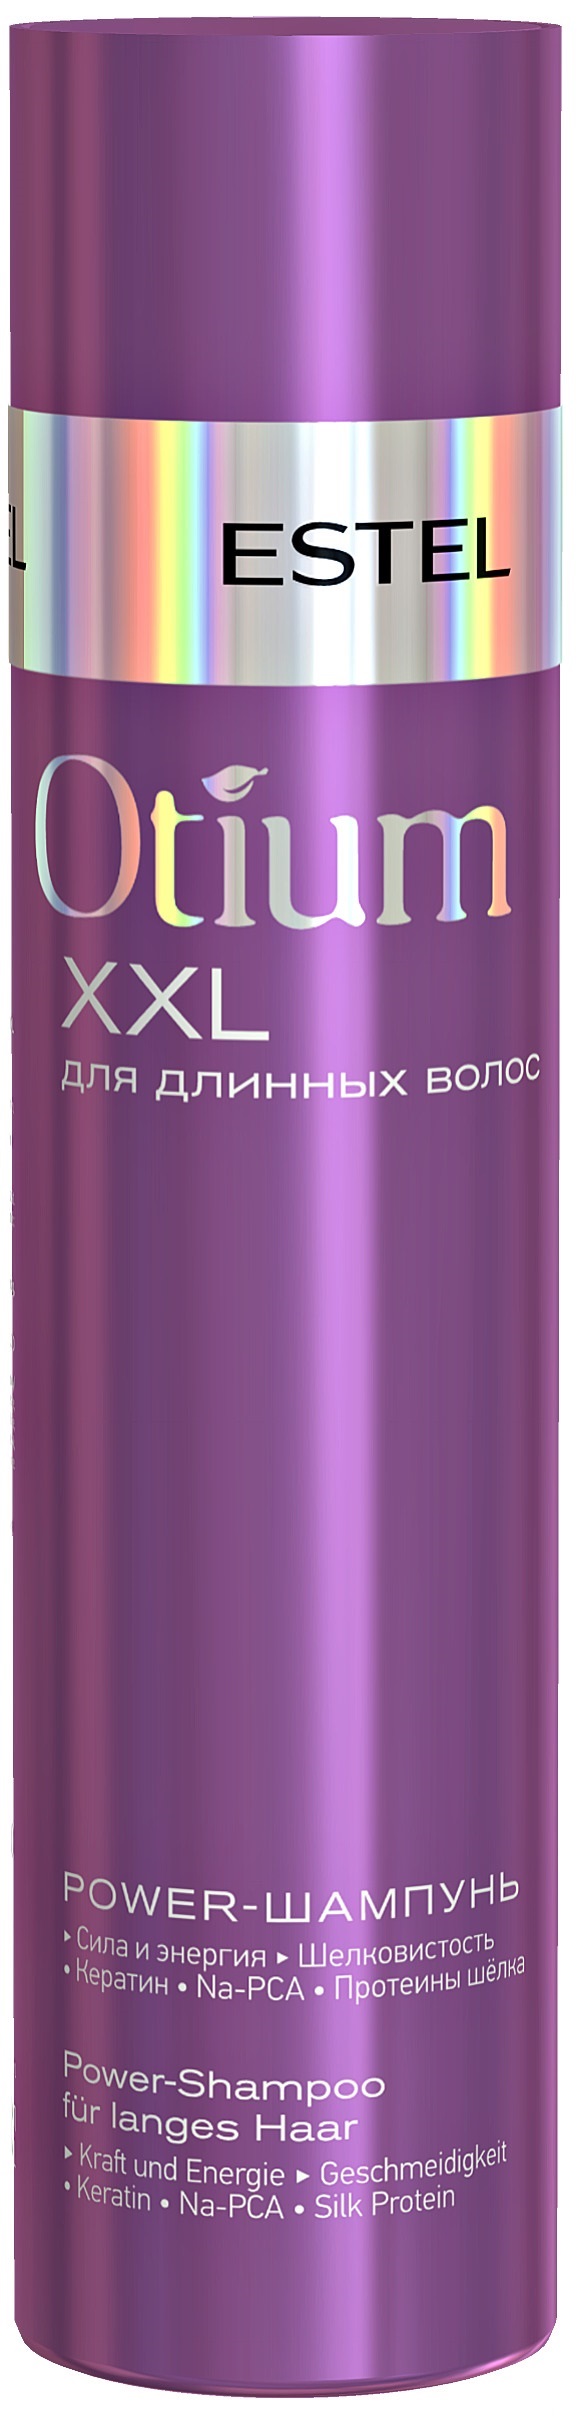 Шампунь для волос ESTEL PROFESSIONAL OTIUM XXL для длинных волос power 250 мл